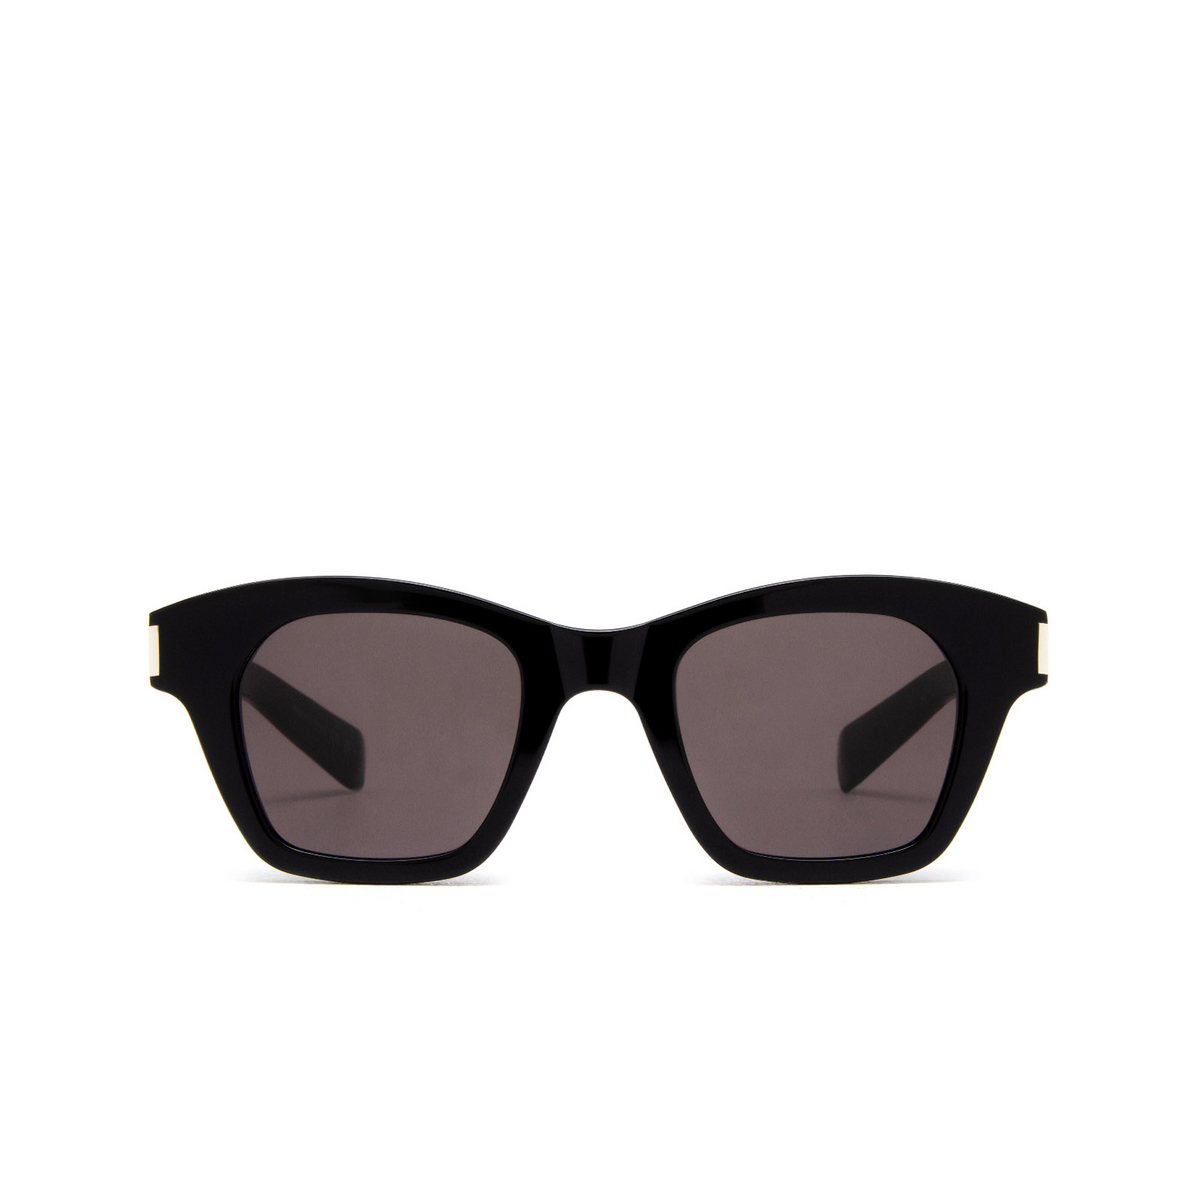 Saint Laurent SL 592 Sunglasses 001 Black - front view